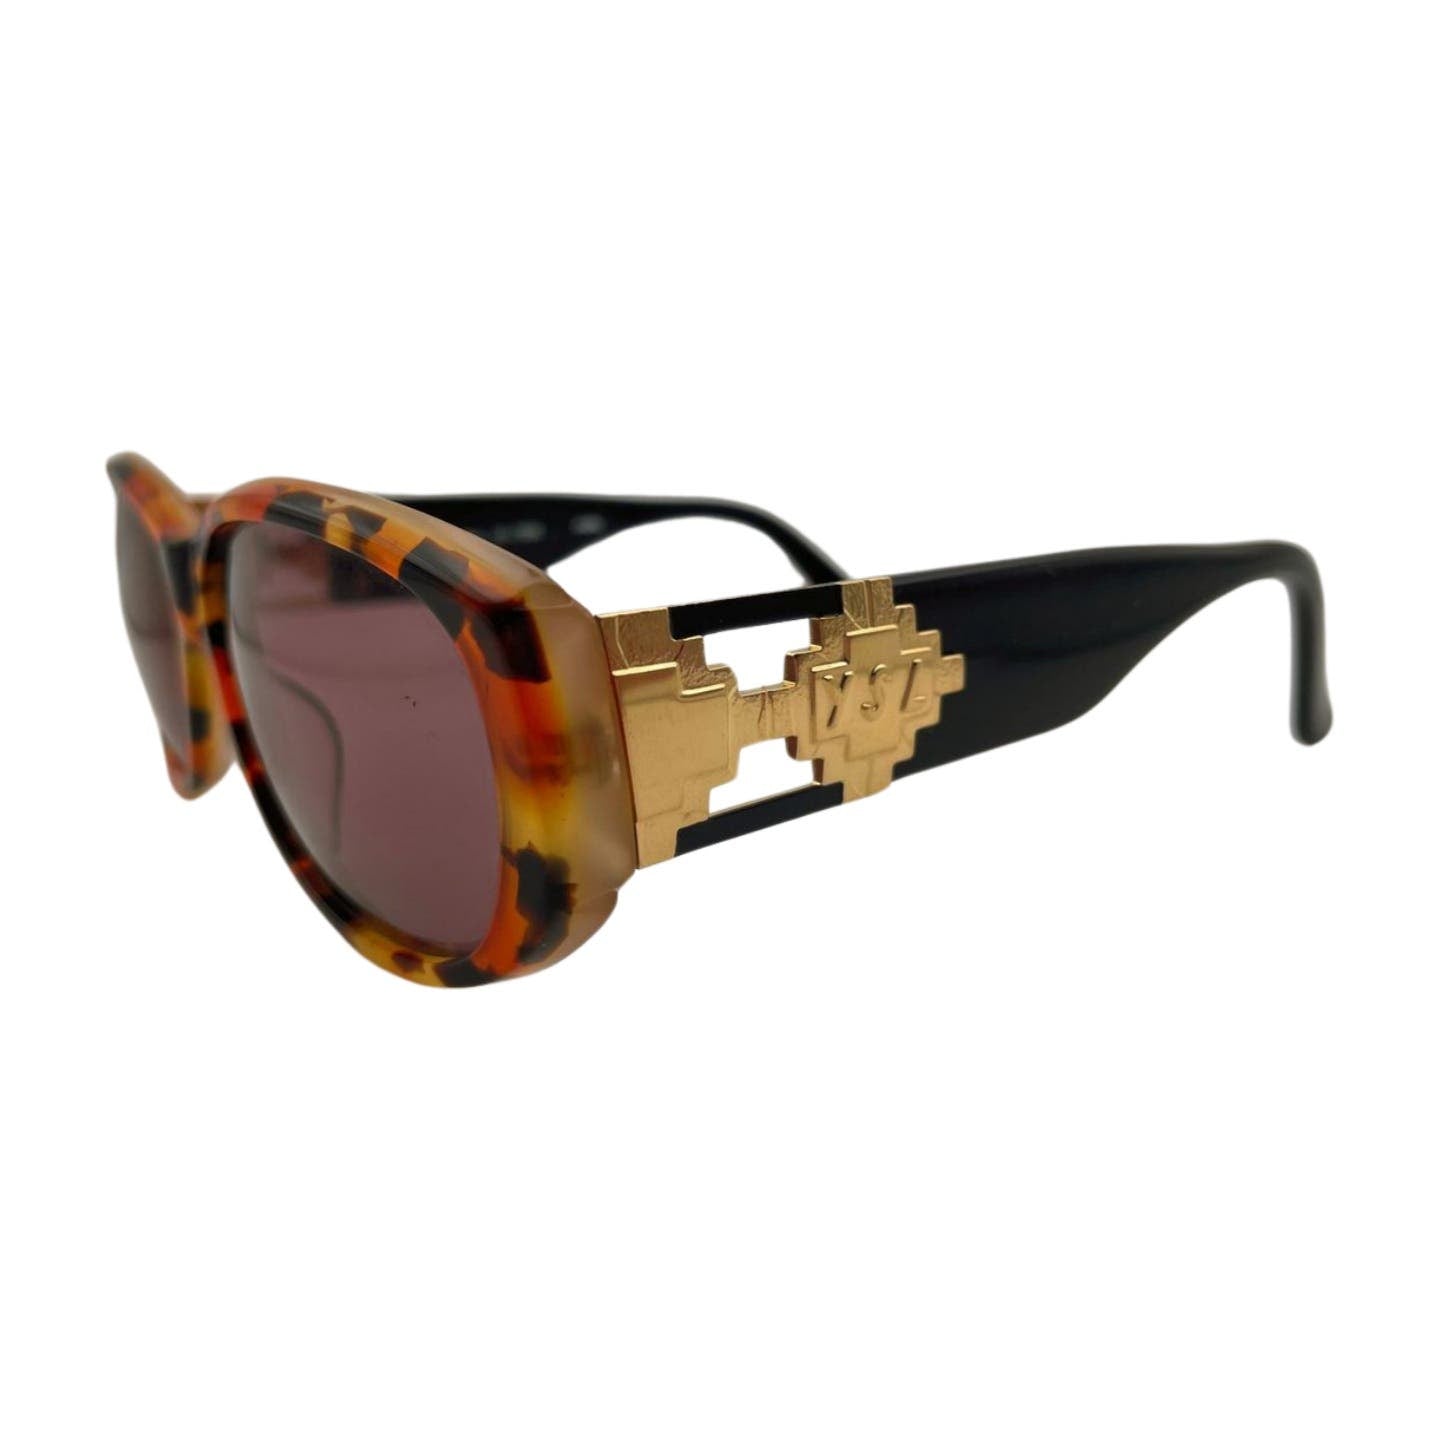 YSL Tortoise Sunglasses - Le Look